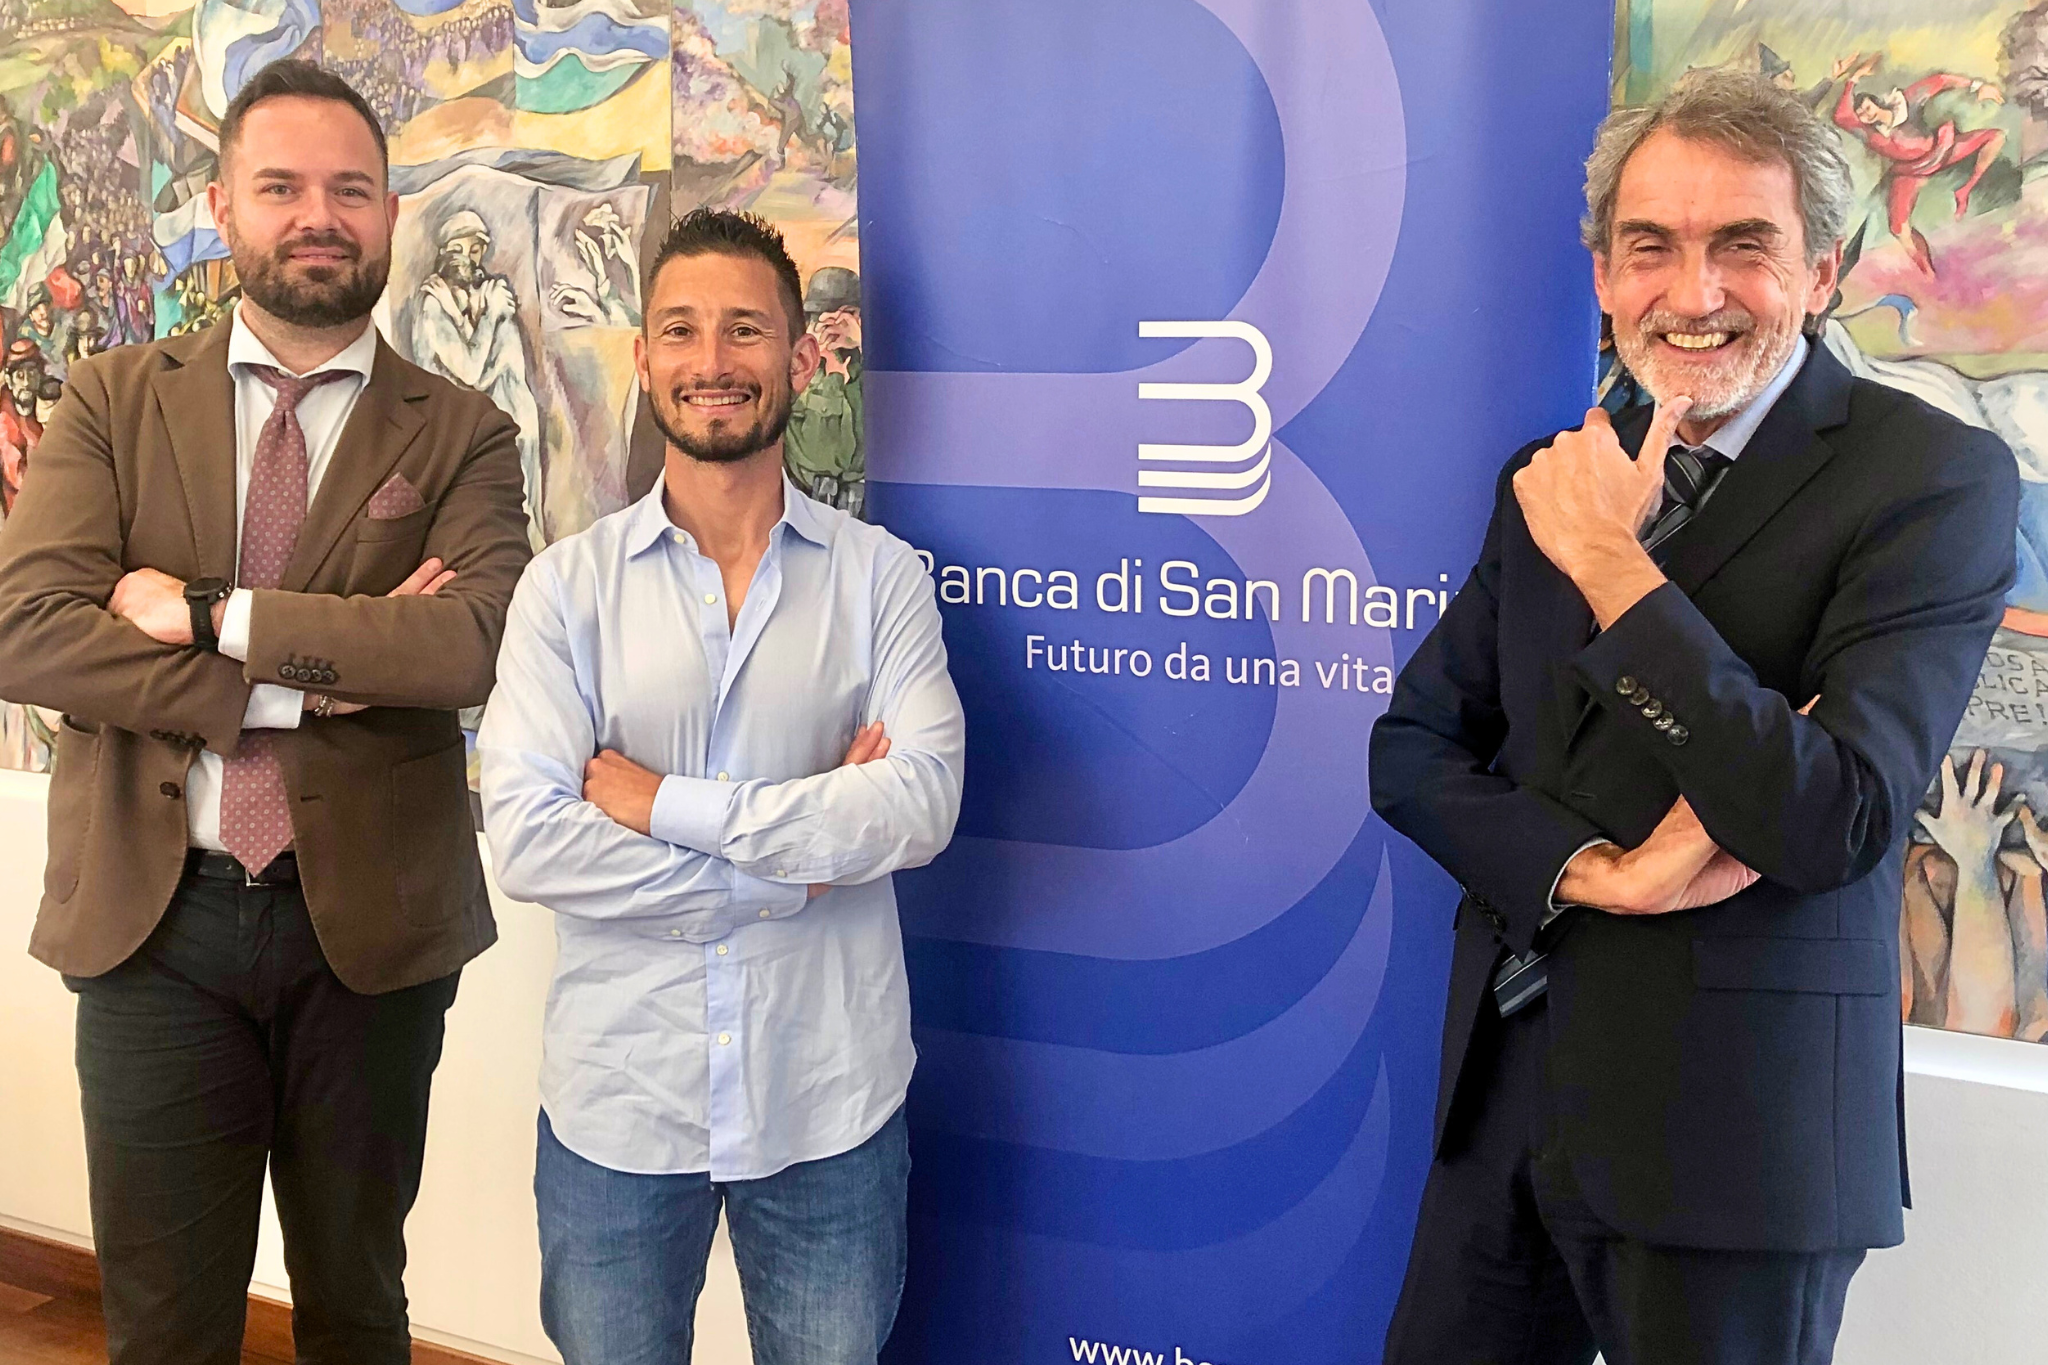 Banca di San Marino e Manuel Poggiali: Nuova collaborazione all’insegna della sostenibilità e della passione per il territorio